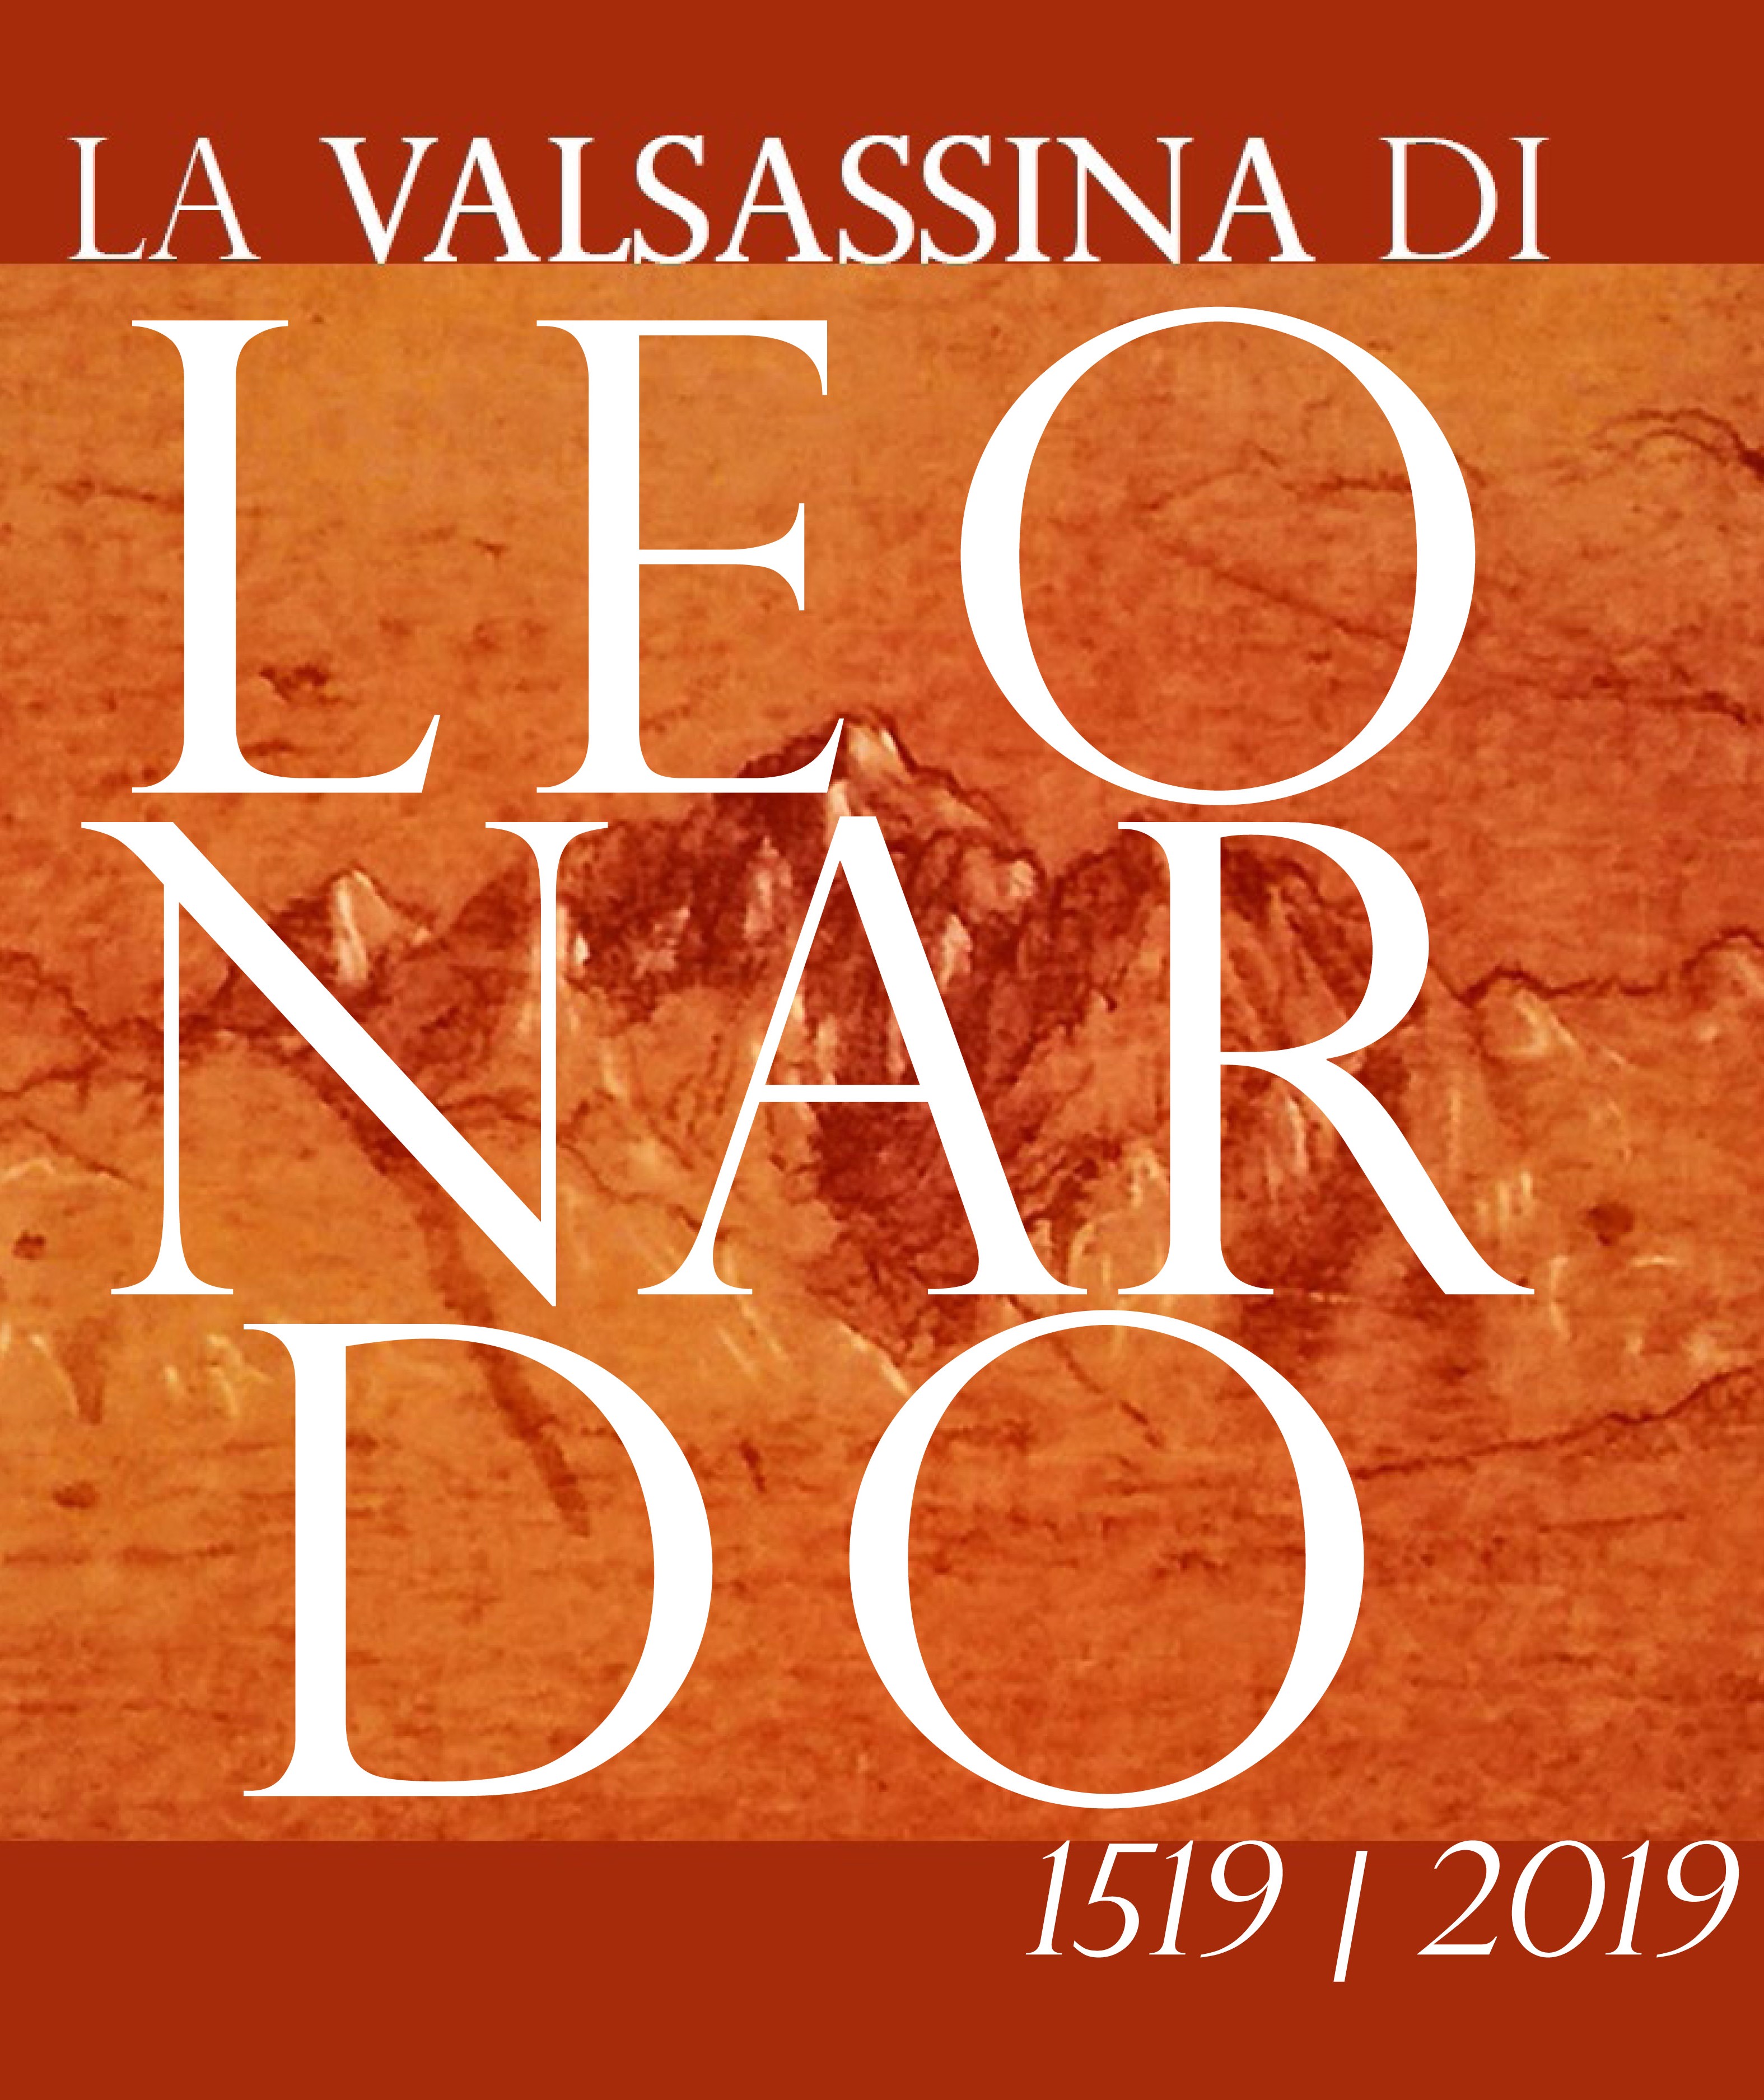 “Valsassina: la valle dei formaggi” prosegue con speciali degustazioni e le escursioni sulle tracce di Leonardo